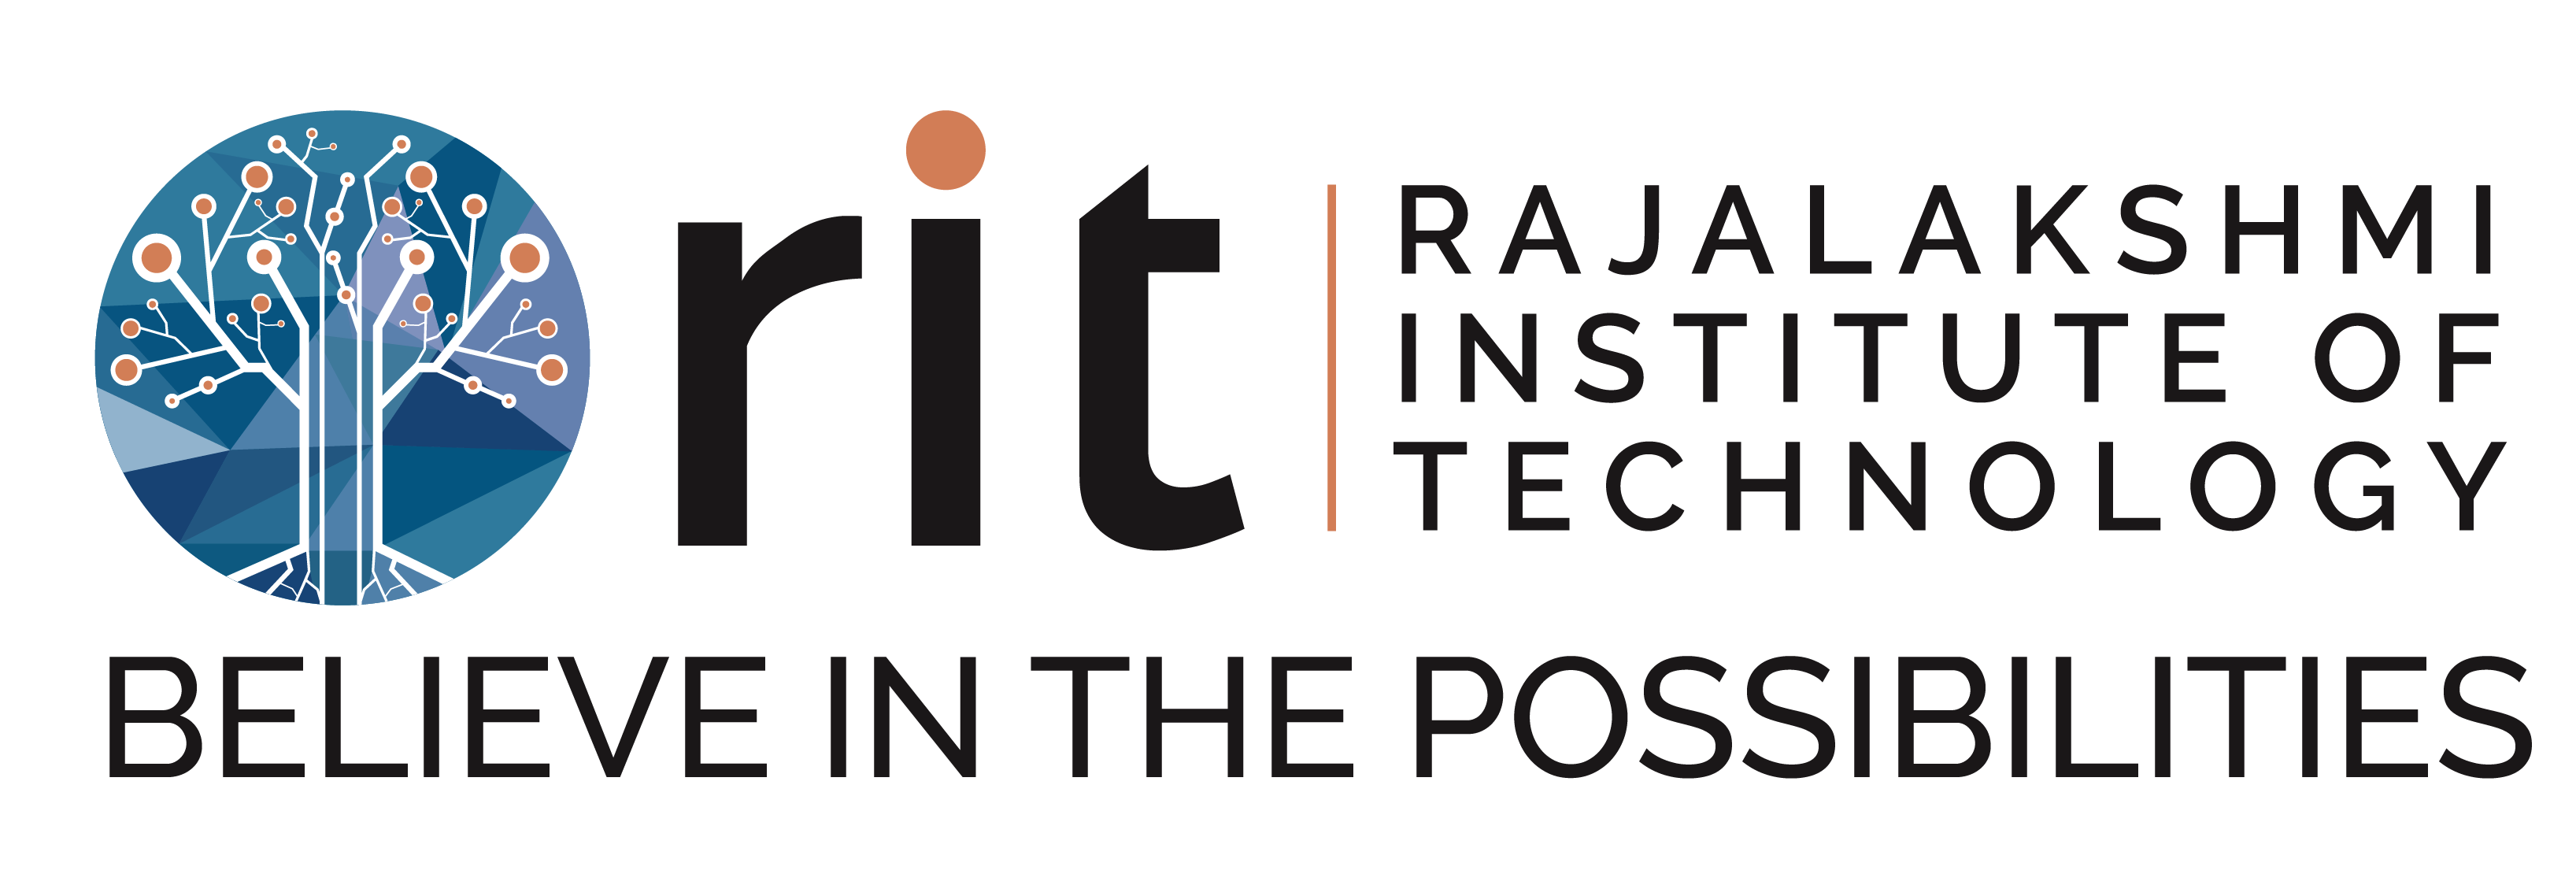 Rajalakshmi Institute of Technology (RIT)